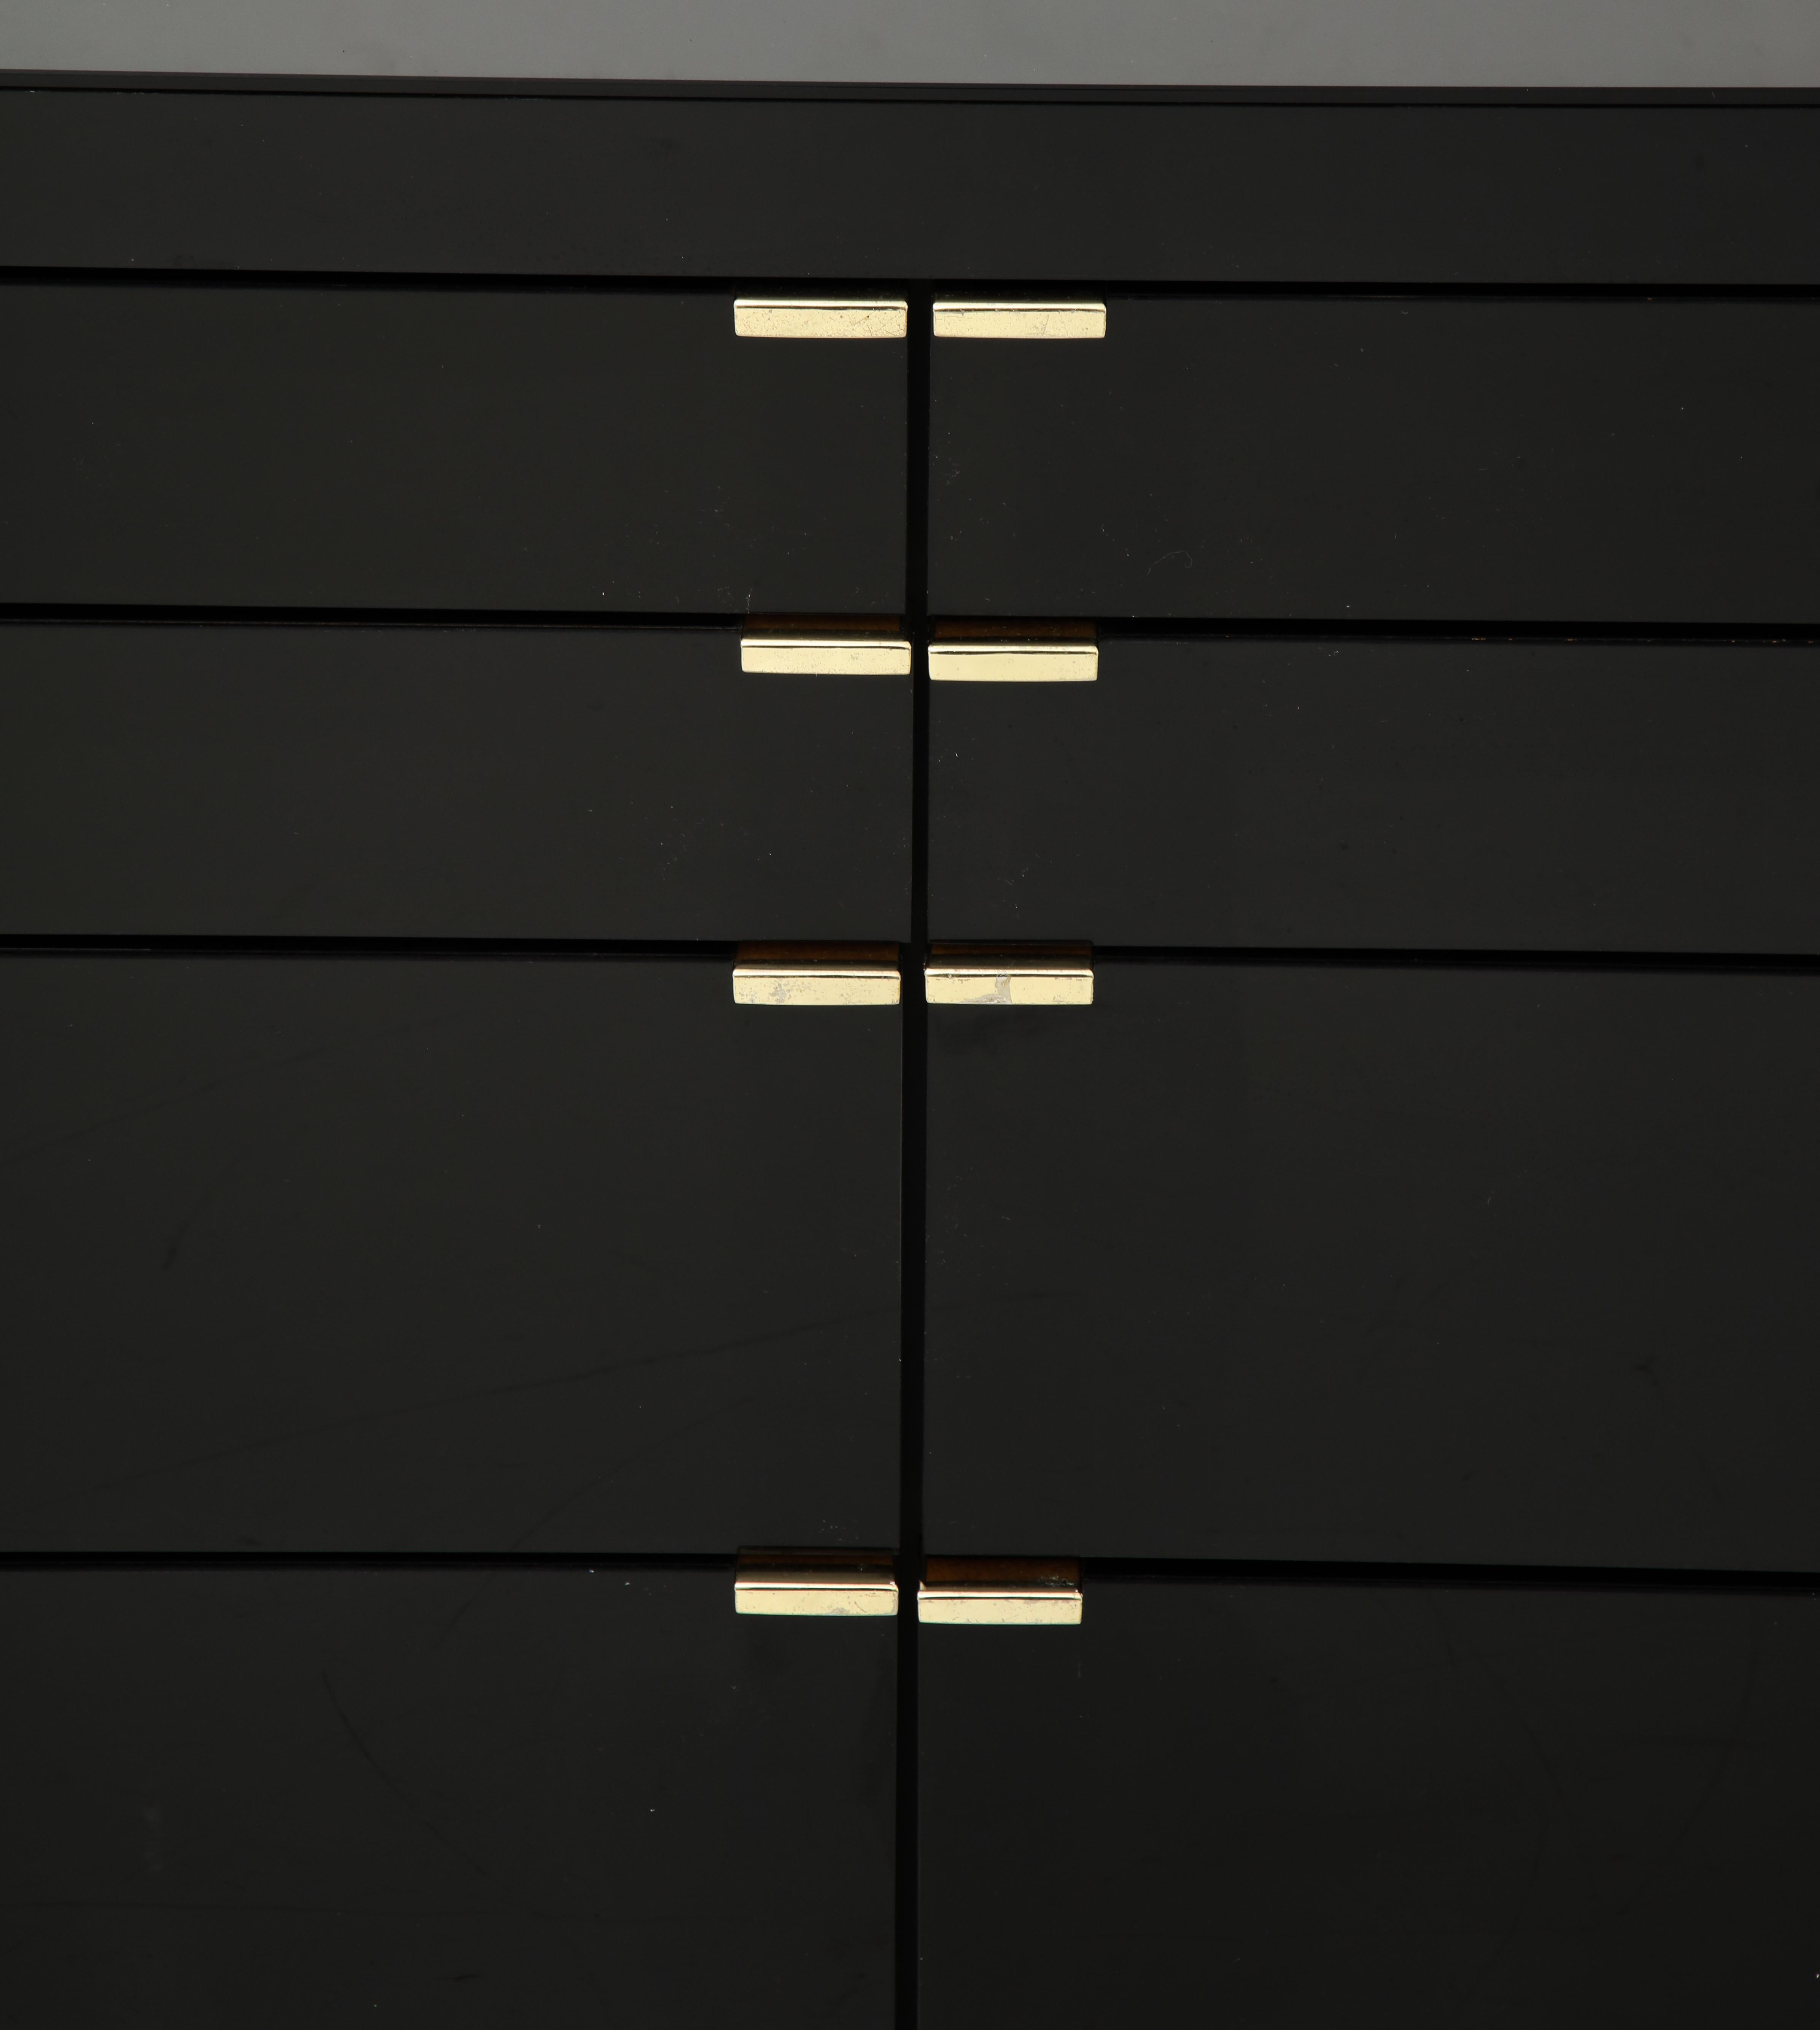 Große schwarze verspiegelte Kommode von Ello Furniture. 
Der Schrank hat acht Schubladen in zwei verschiedenen Größen mit Messinggriffen. 
Der Spiegel ist in einem ausgezeichneten Zustand und die Messinggriffe haben eine leicht angeschlagene Patina.